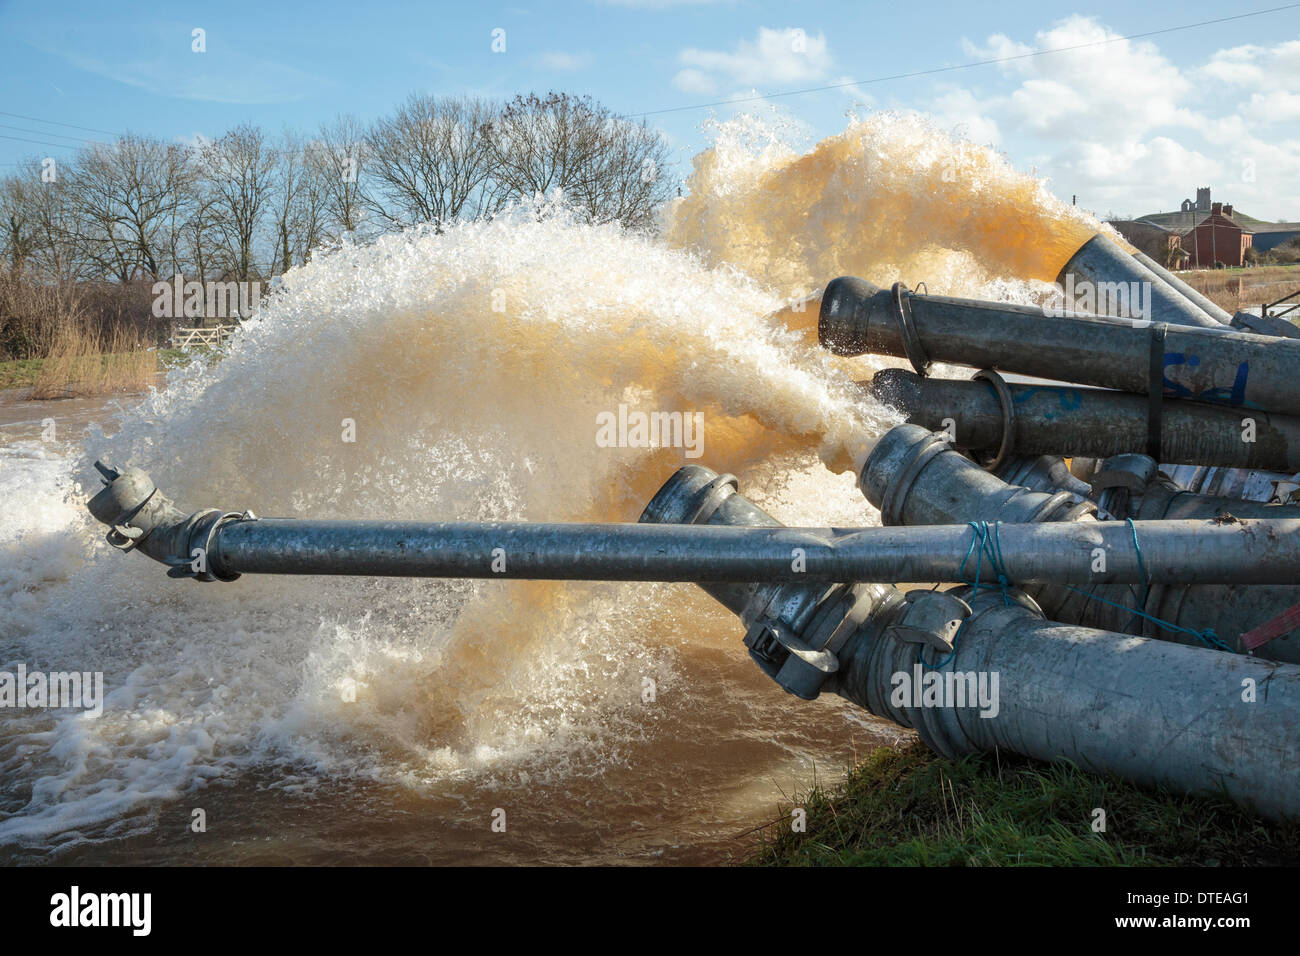 Burrowbridge, UK. 16 Février, 2014. Pompes diesel supplémentaire l'aide de la station de pompage à Burrowbridge Saltmoor le 16 février 2014. Burrow Mump est visible derrière la tuyauterie. L'Agence de l'Environnement ont rédigé dans des capacités supplémentaires pour aider à se débarrasser de l'énorme volume d'eau de la rivière Parrett dans Madikwe River Lodge. D'énormes inondations ont causé de nombreux résidants dans les villages de Burrowbridge et à proximité de la lande à évacuer leurs maisons. Credit : Nick Cable/Alamy Live News Banque D'Images